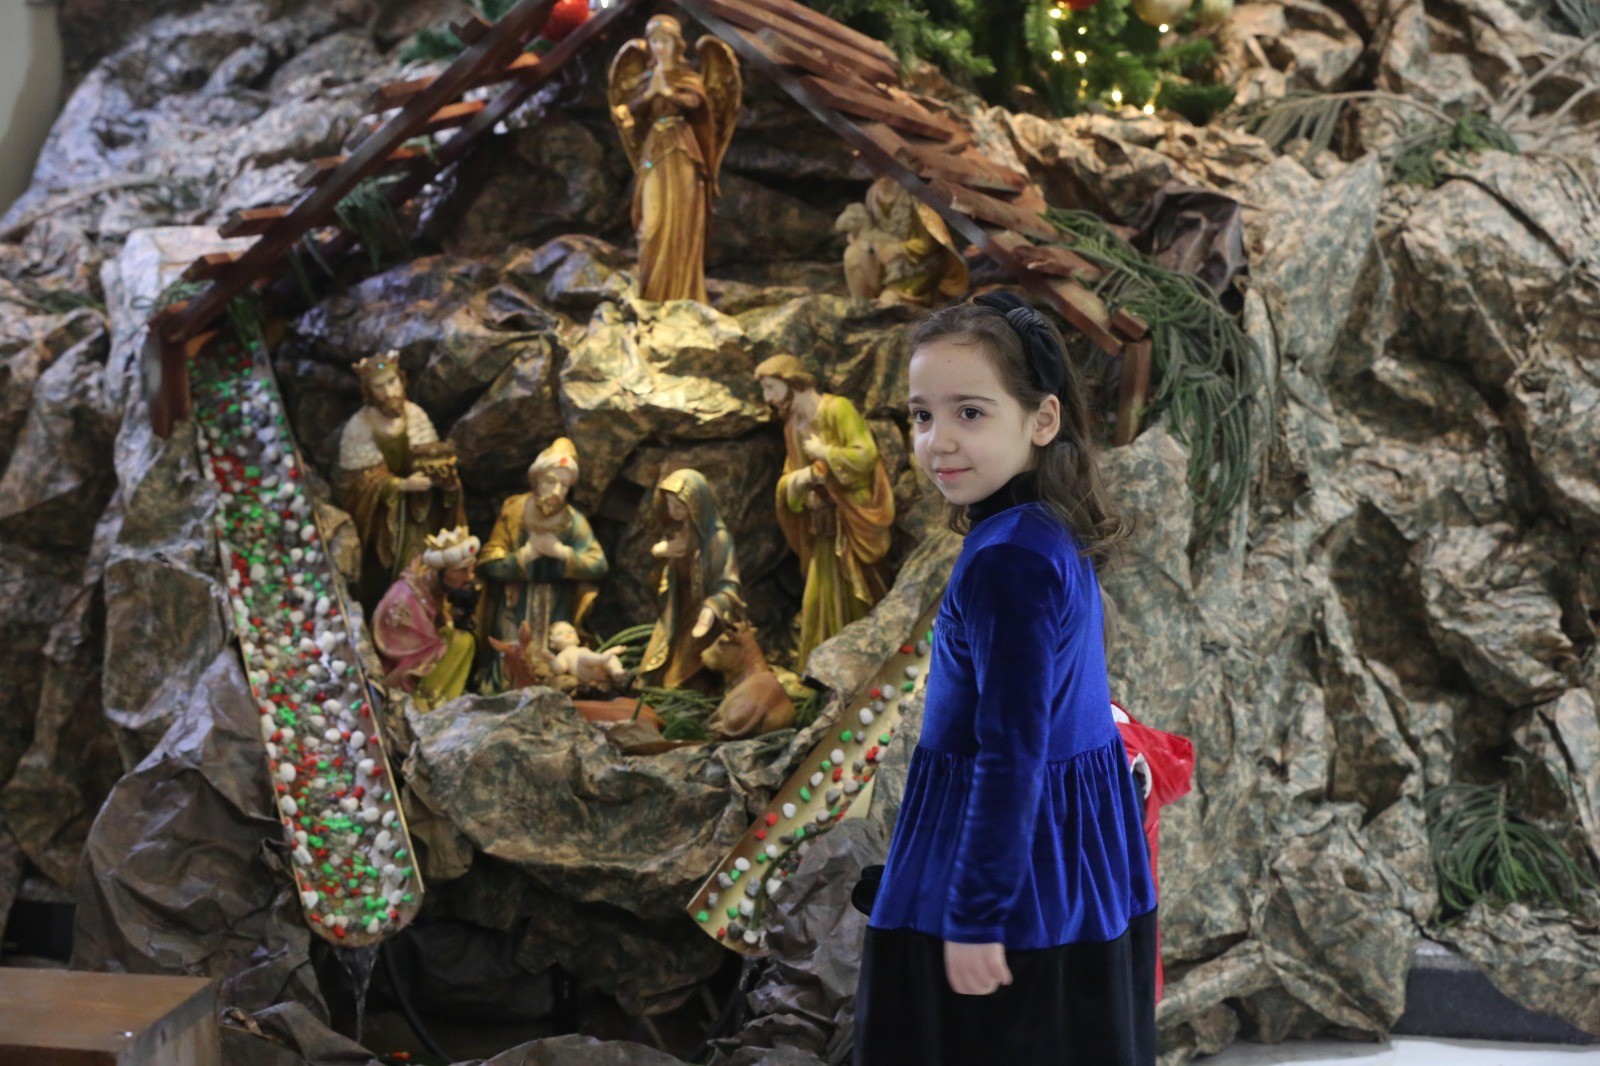 المسيحيون يحتفلون بعيد الميلاد المجيد في غزة وفق التقويم الغربي